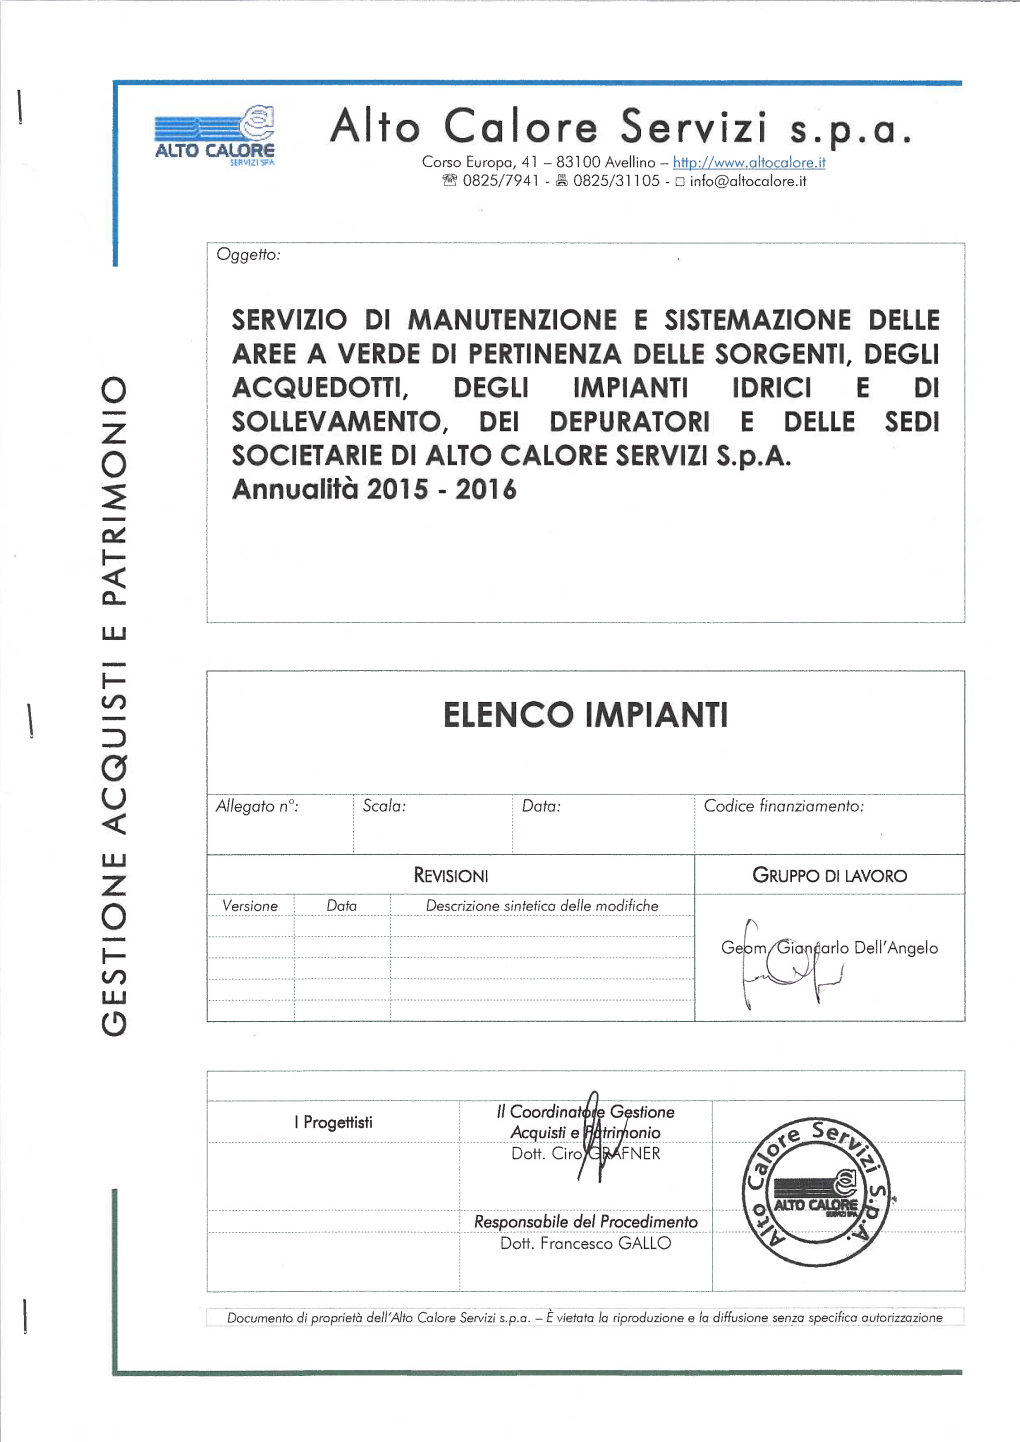 Elenco Impianti716201532349pm